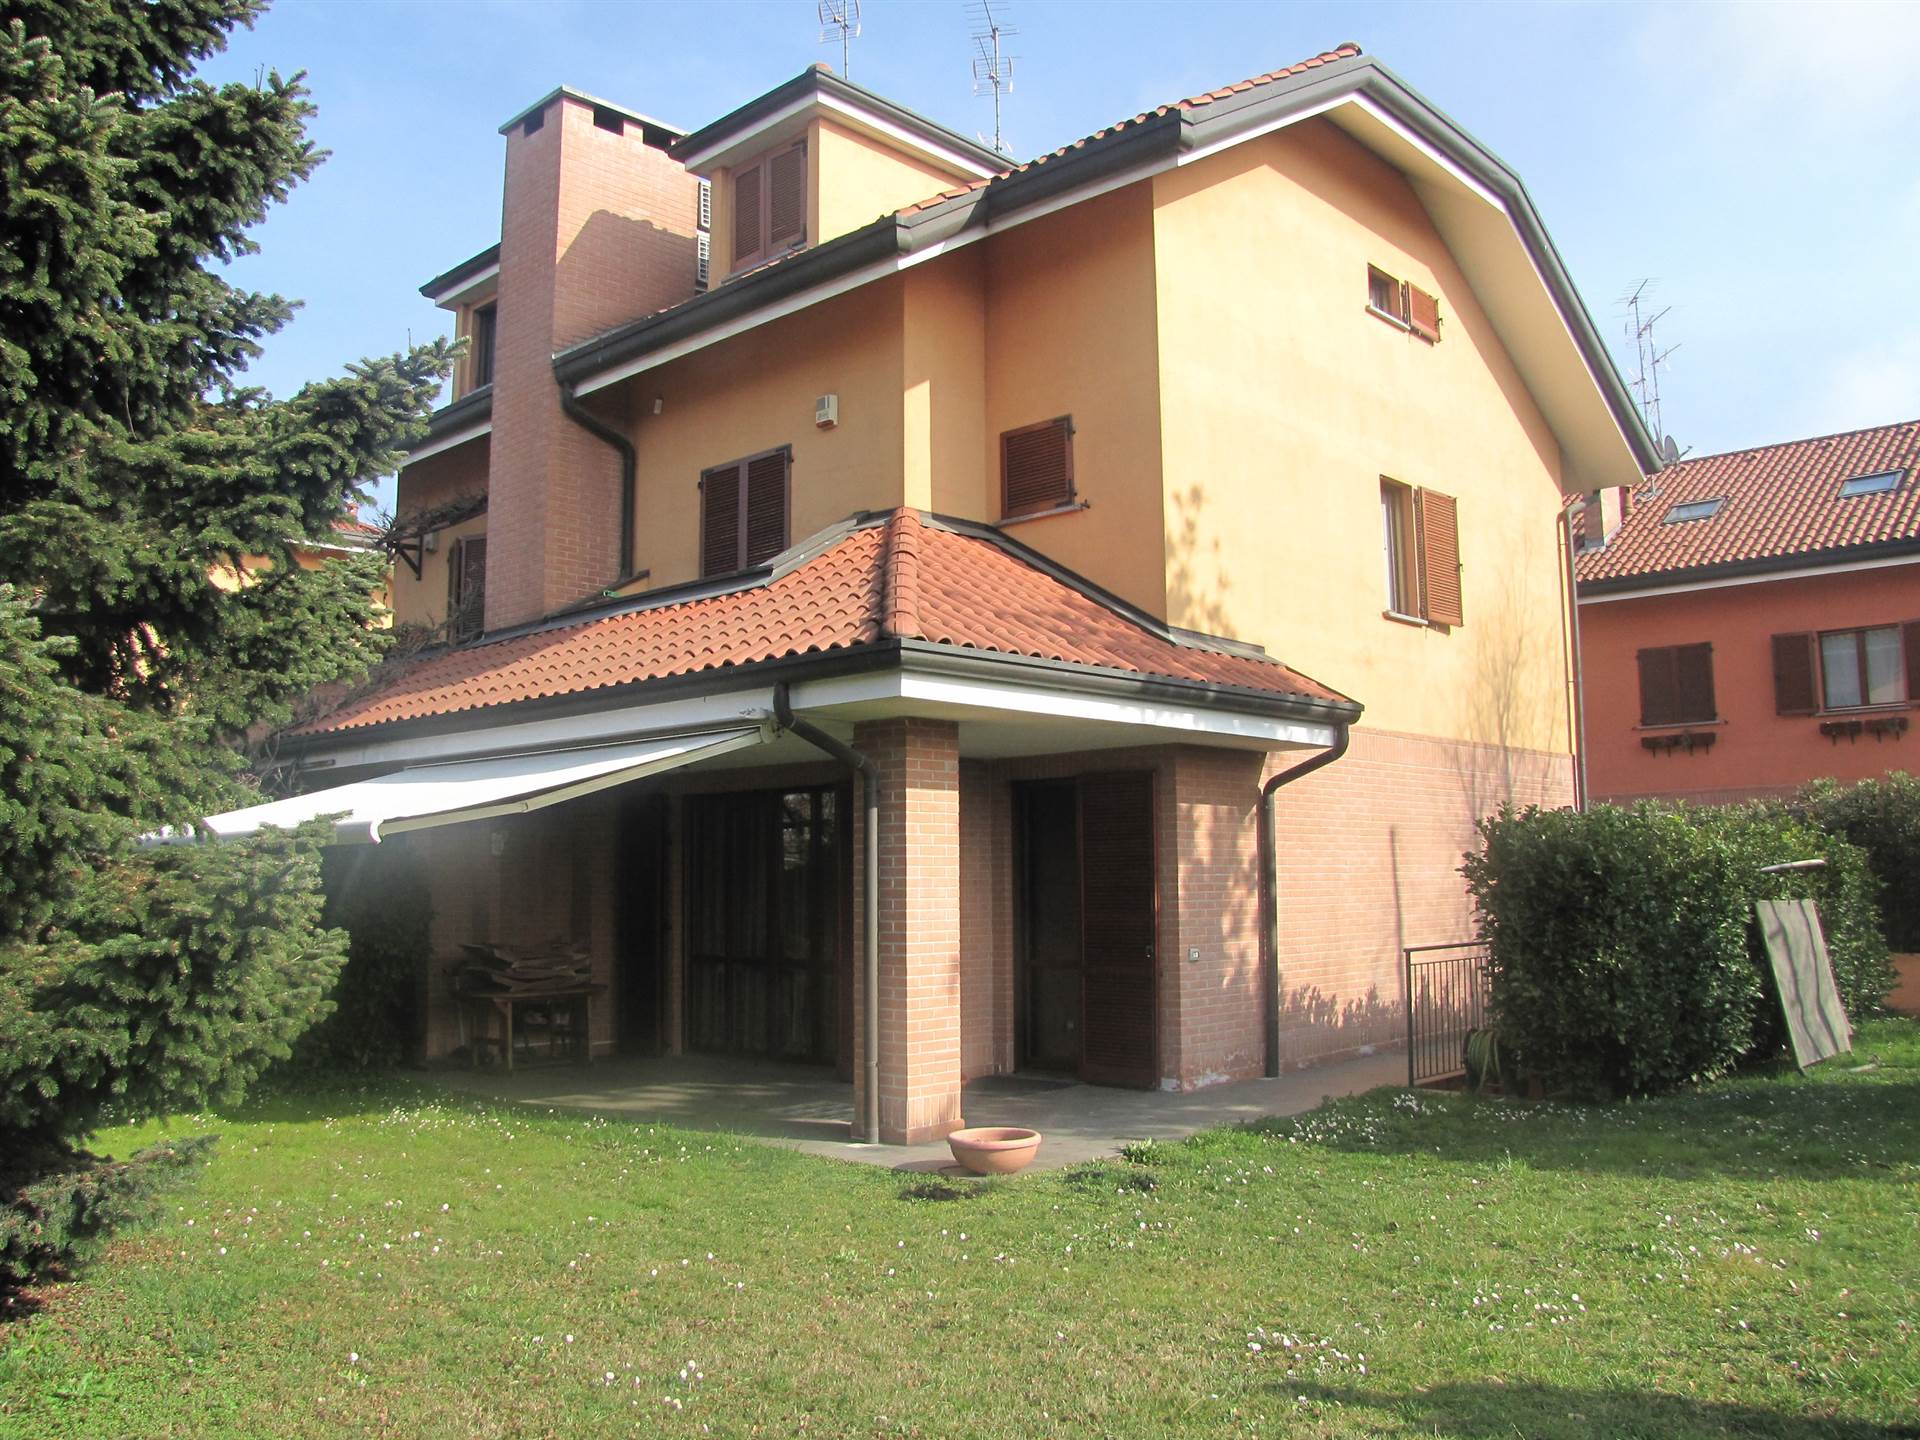 Villa Bifamiliare in vendita a Segrate, 5 locali, prezzo € 935.000 | PortaleAgenzieImmobiliari.it